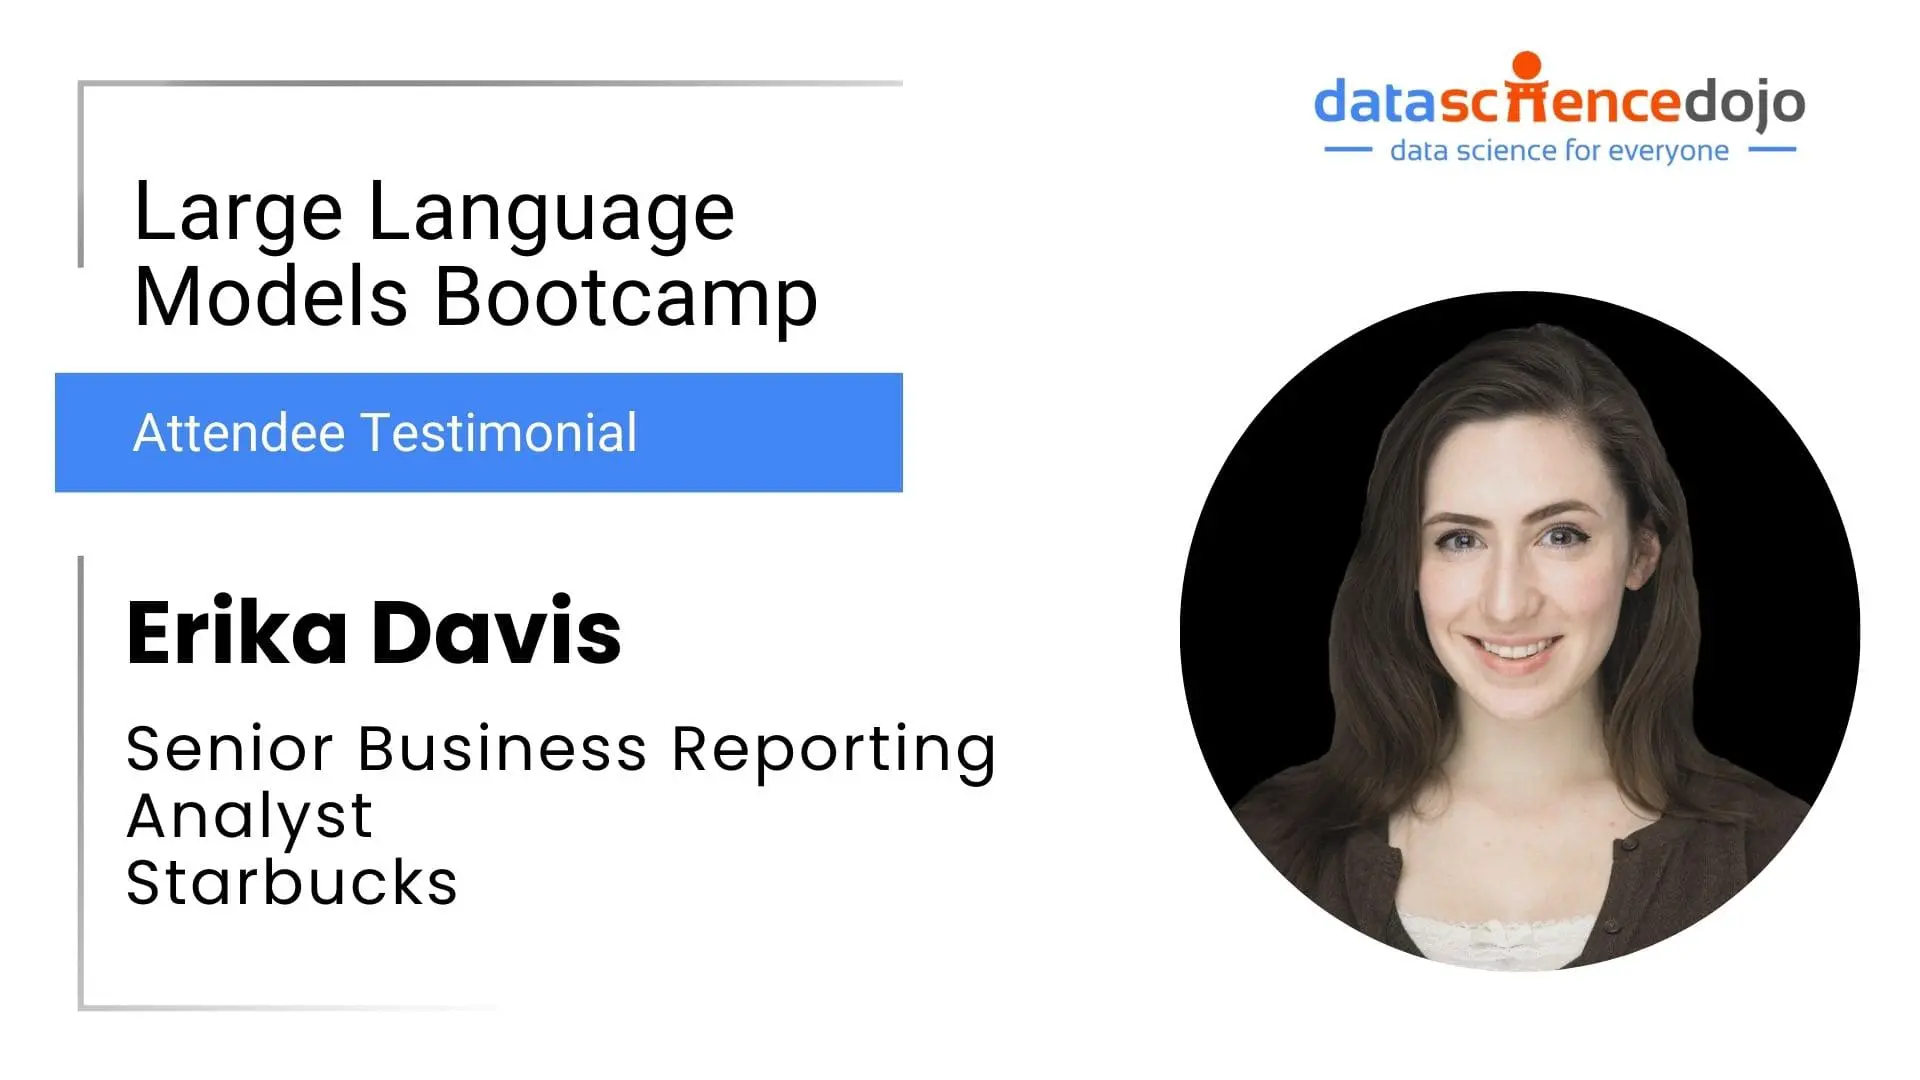 Erika Davis | Large Language Models Bootcamp | Data Science Dojo